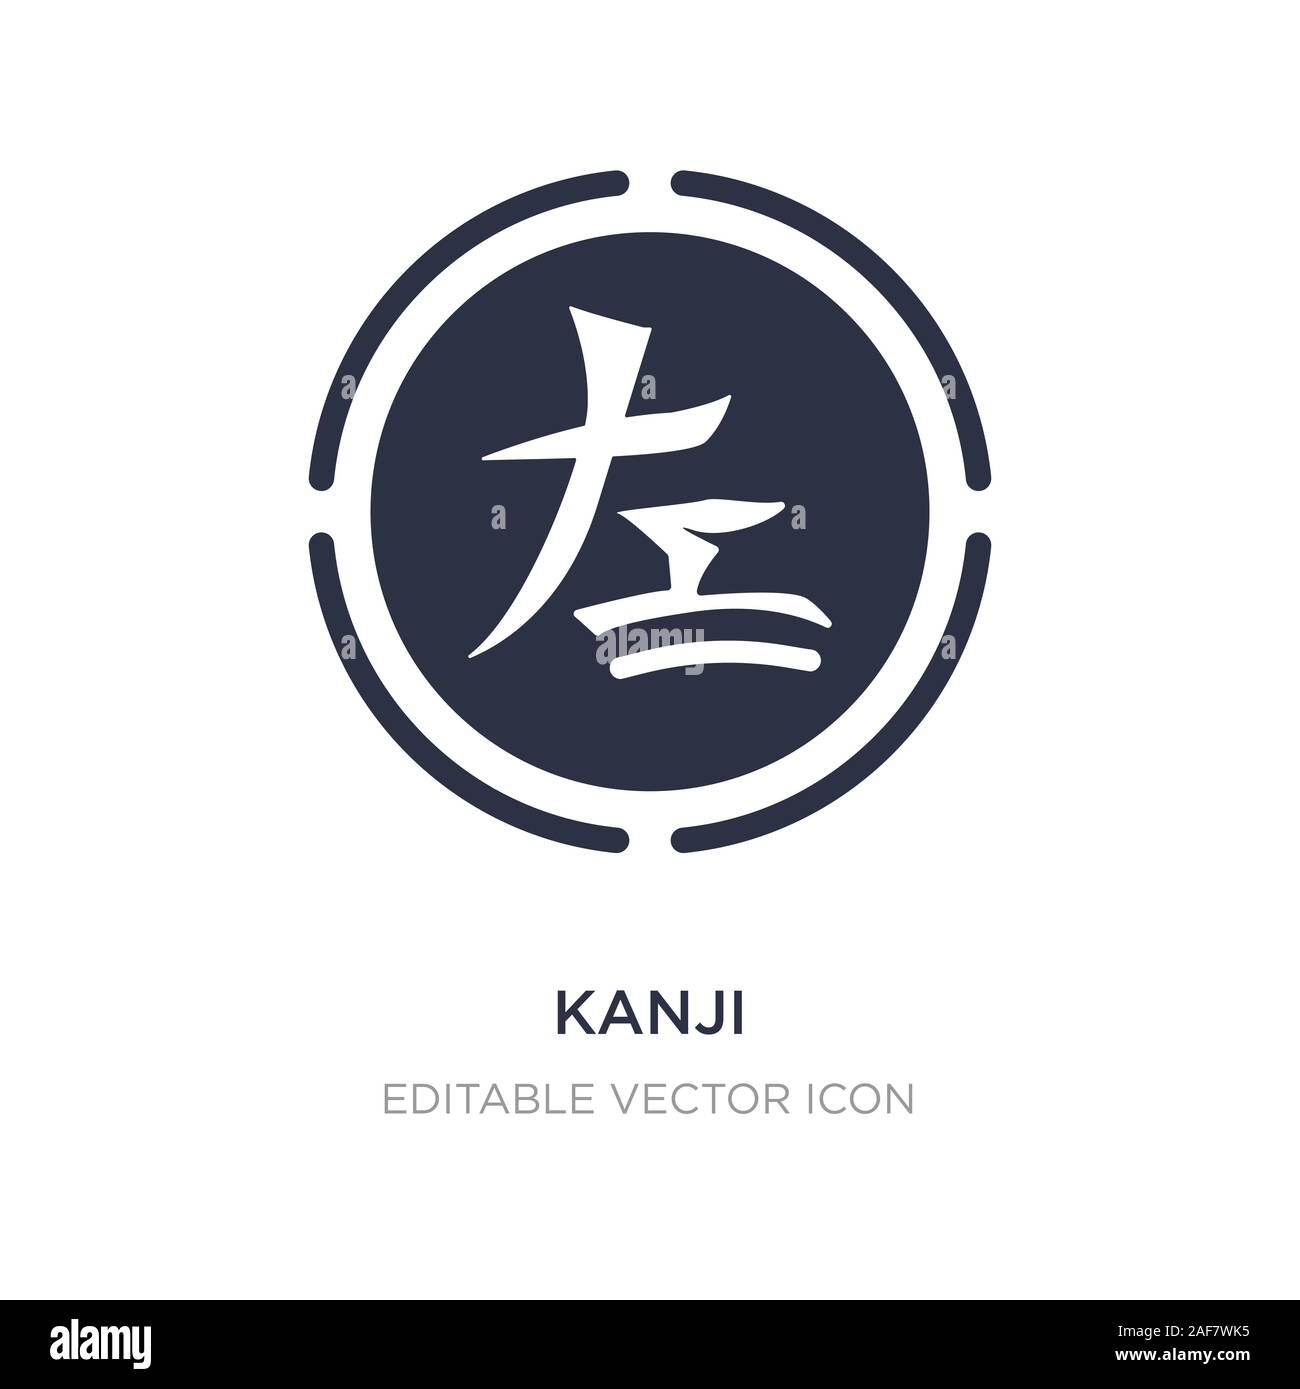 L Icone De Kanji Sur Fond Blanc Illustration A Partir De L Element Simple Concept Signes Symbole Icone Kanji Design Image Vectorielle Stock Alamy